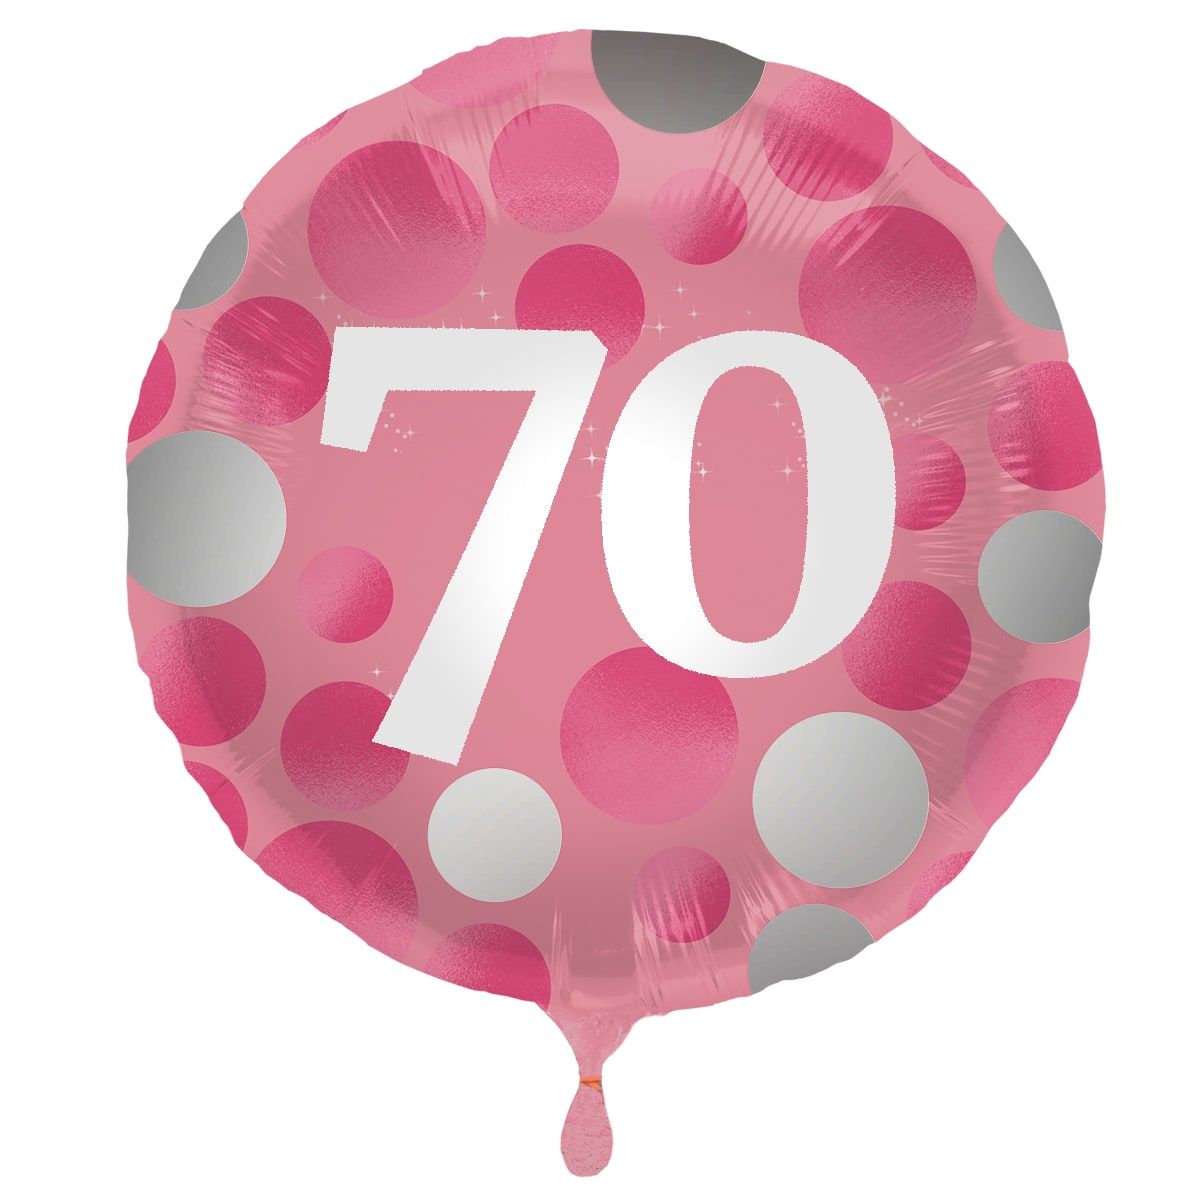 Folieballon glossy 70 happy birthday roze